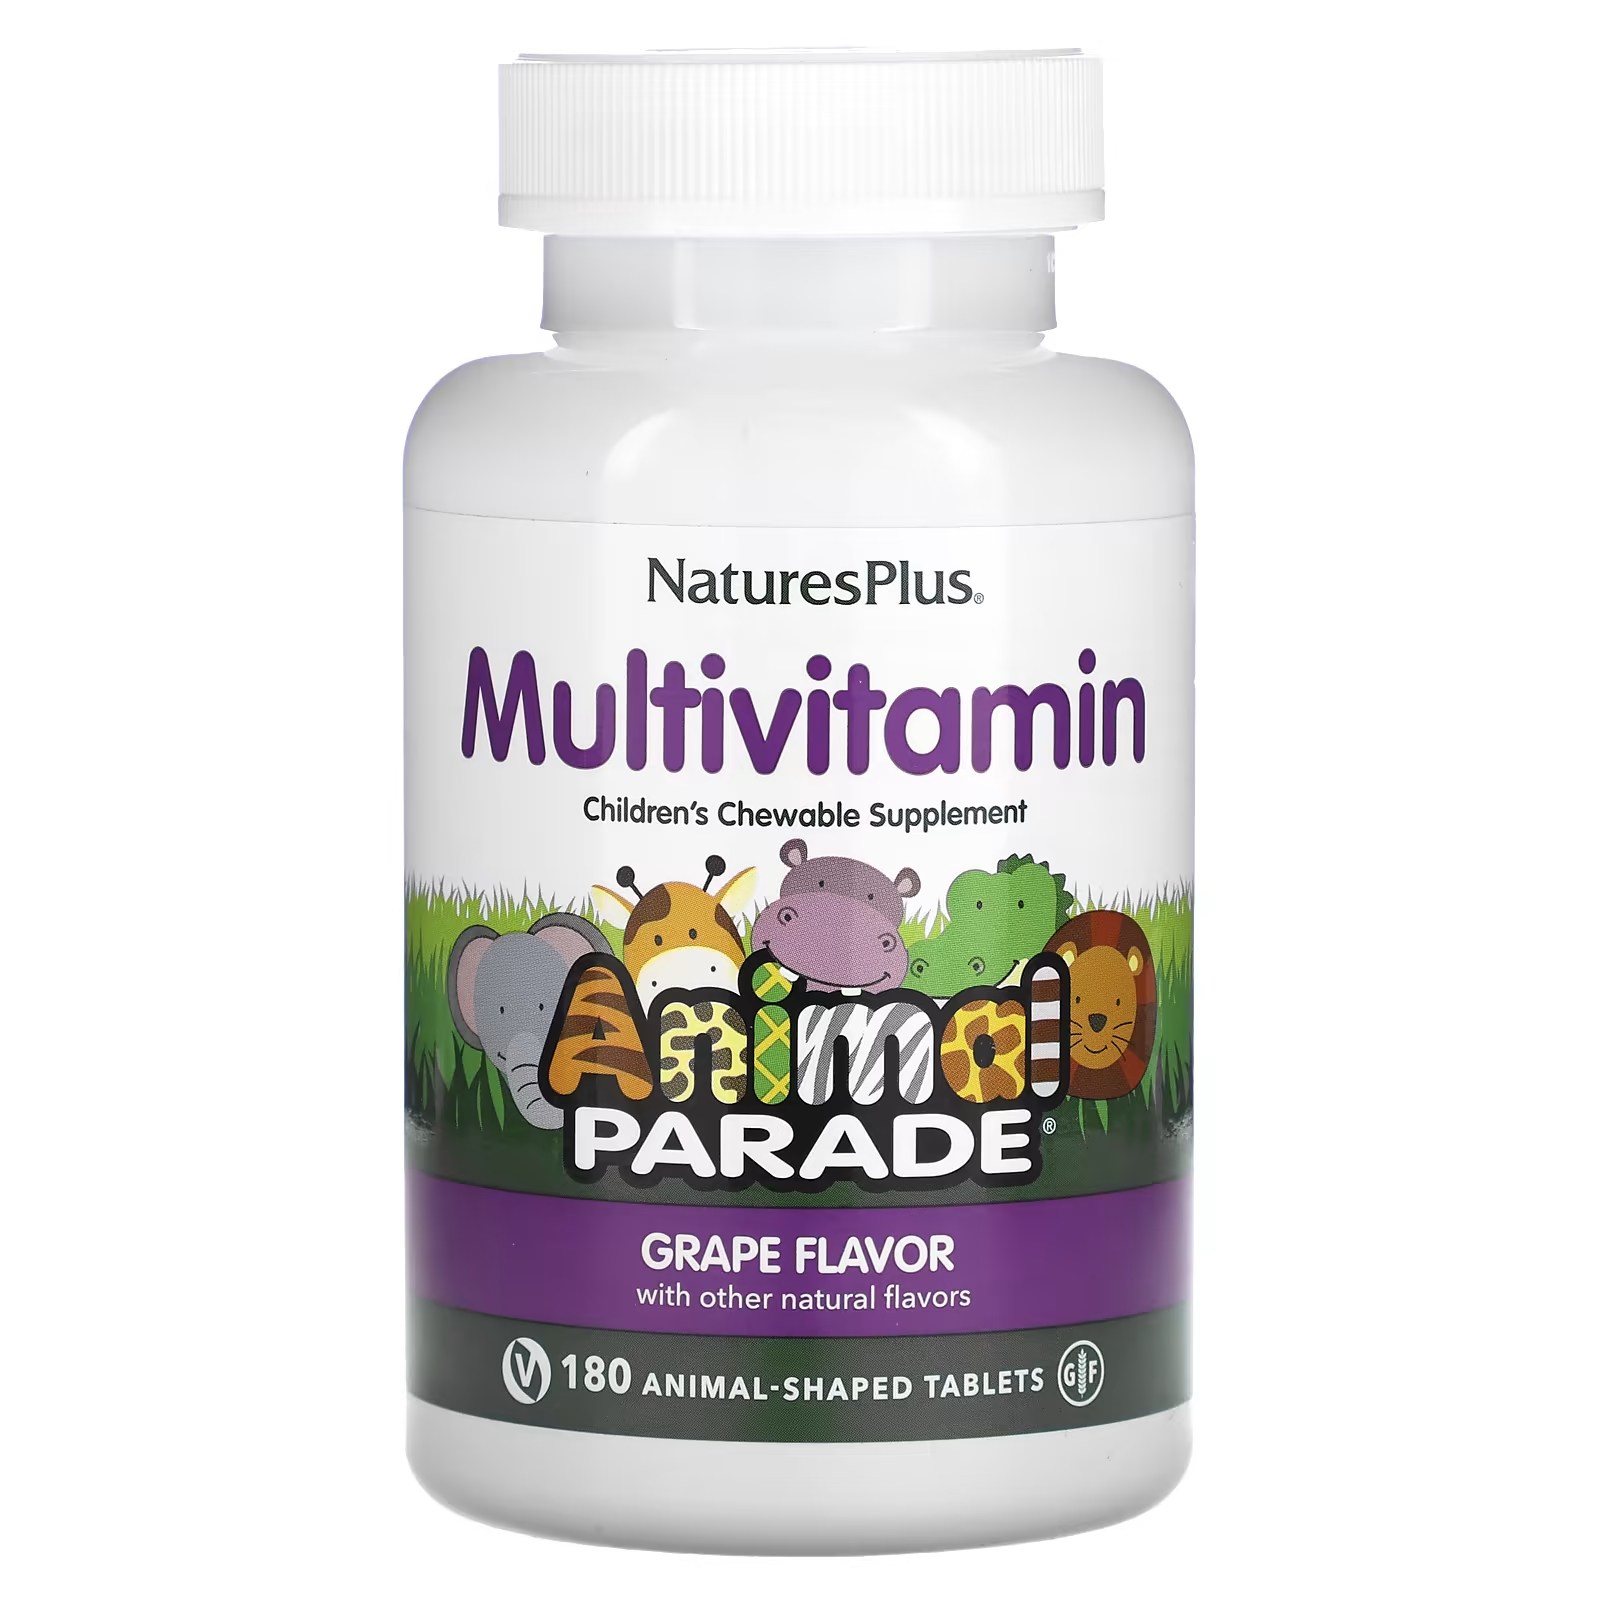 Мультивитаминная добавка NaturesPlus Animal Parade со вкусом винограда, 180 таблеток в форме животных витамины антиоксиданты минералы эвалар мультивитамины мармеладные ягоды